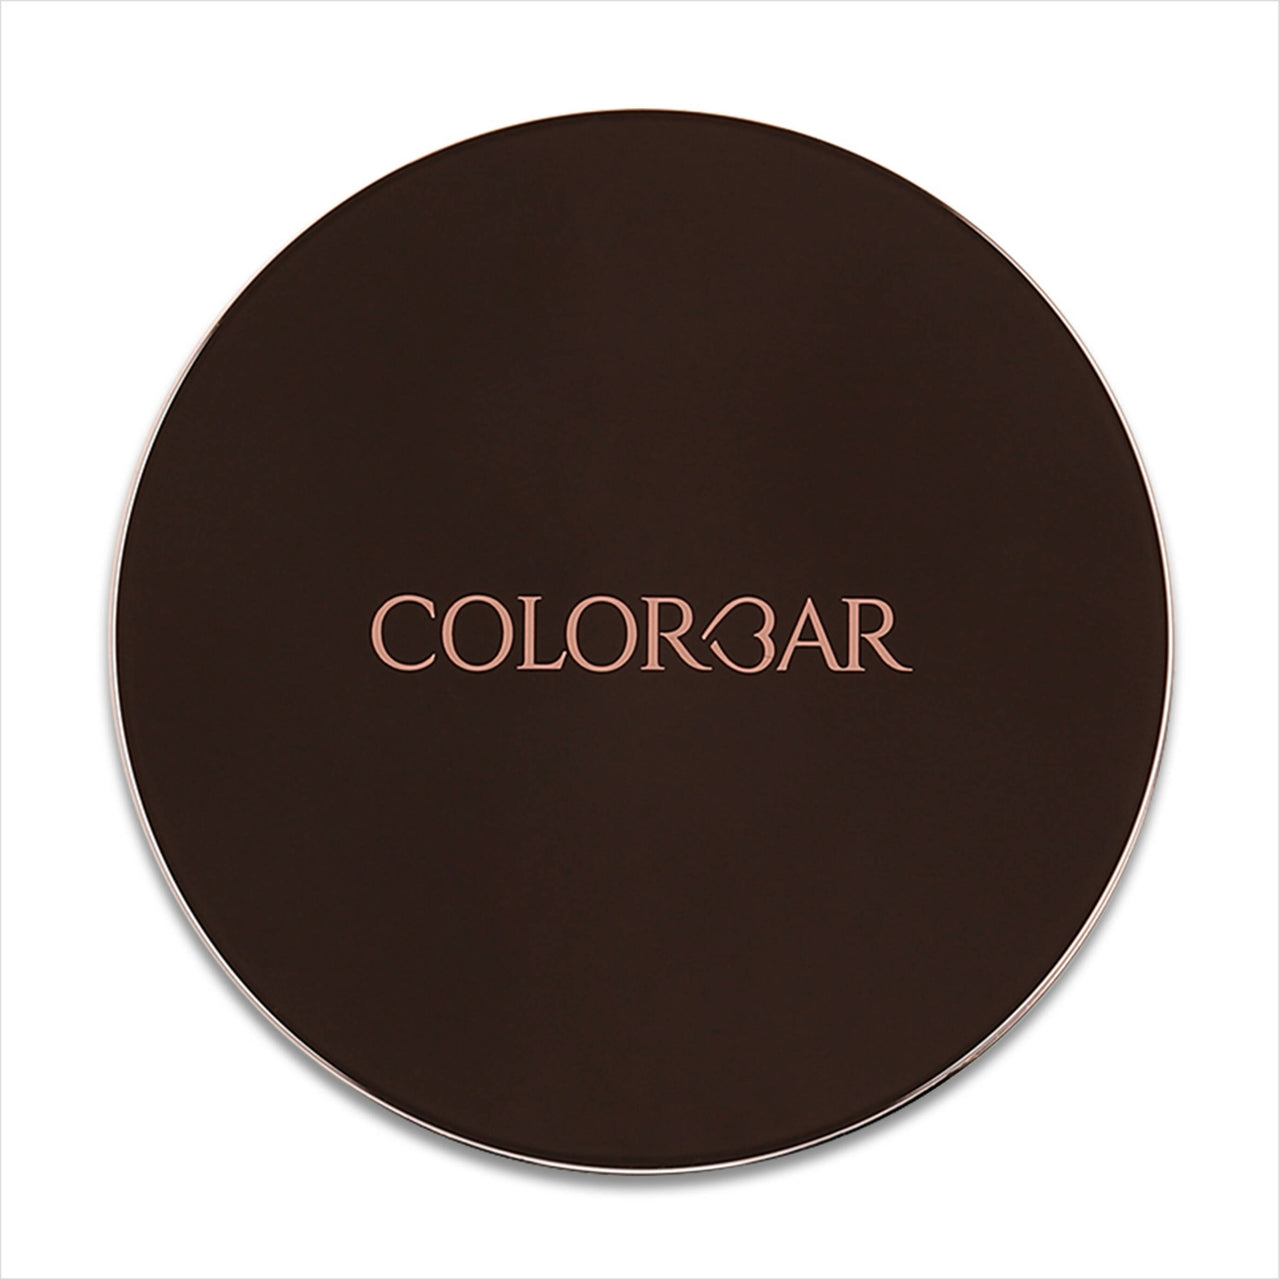 Colorbar 24Hrs Wear Weightless Powder Foundation Pf 11 - Distacart